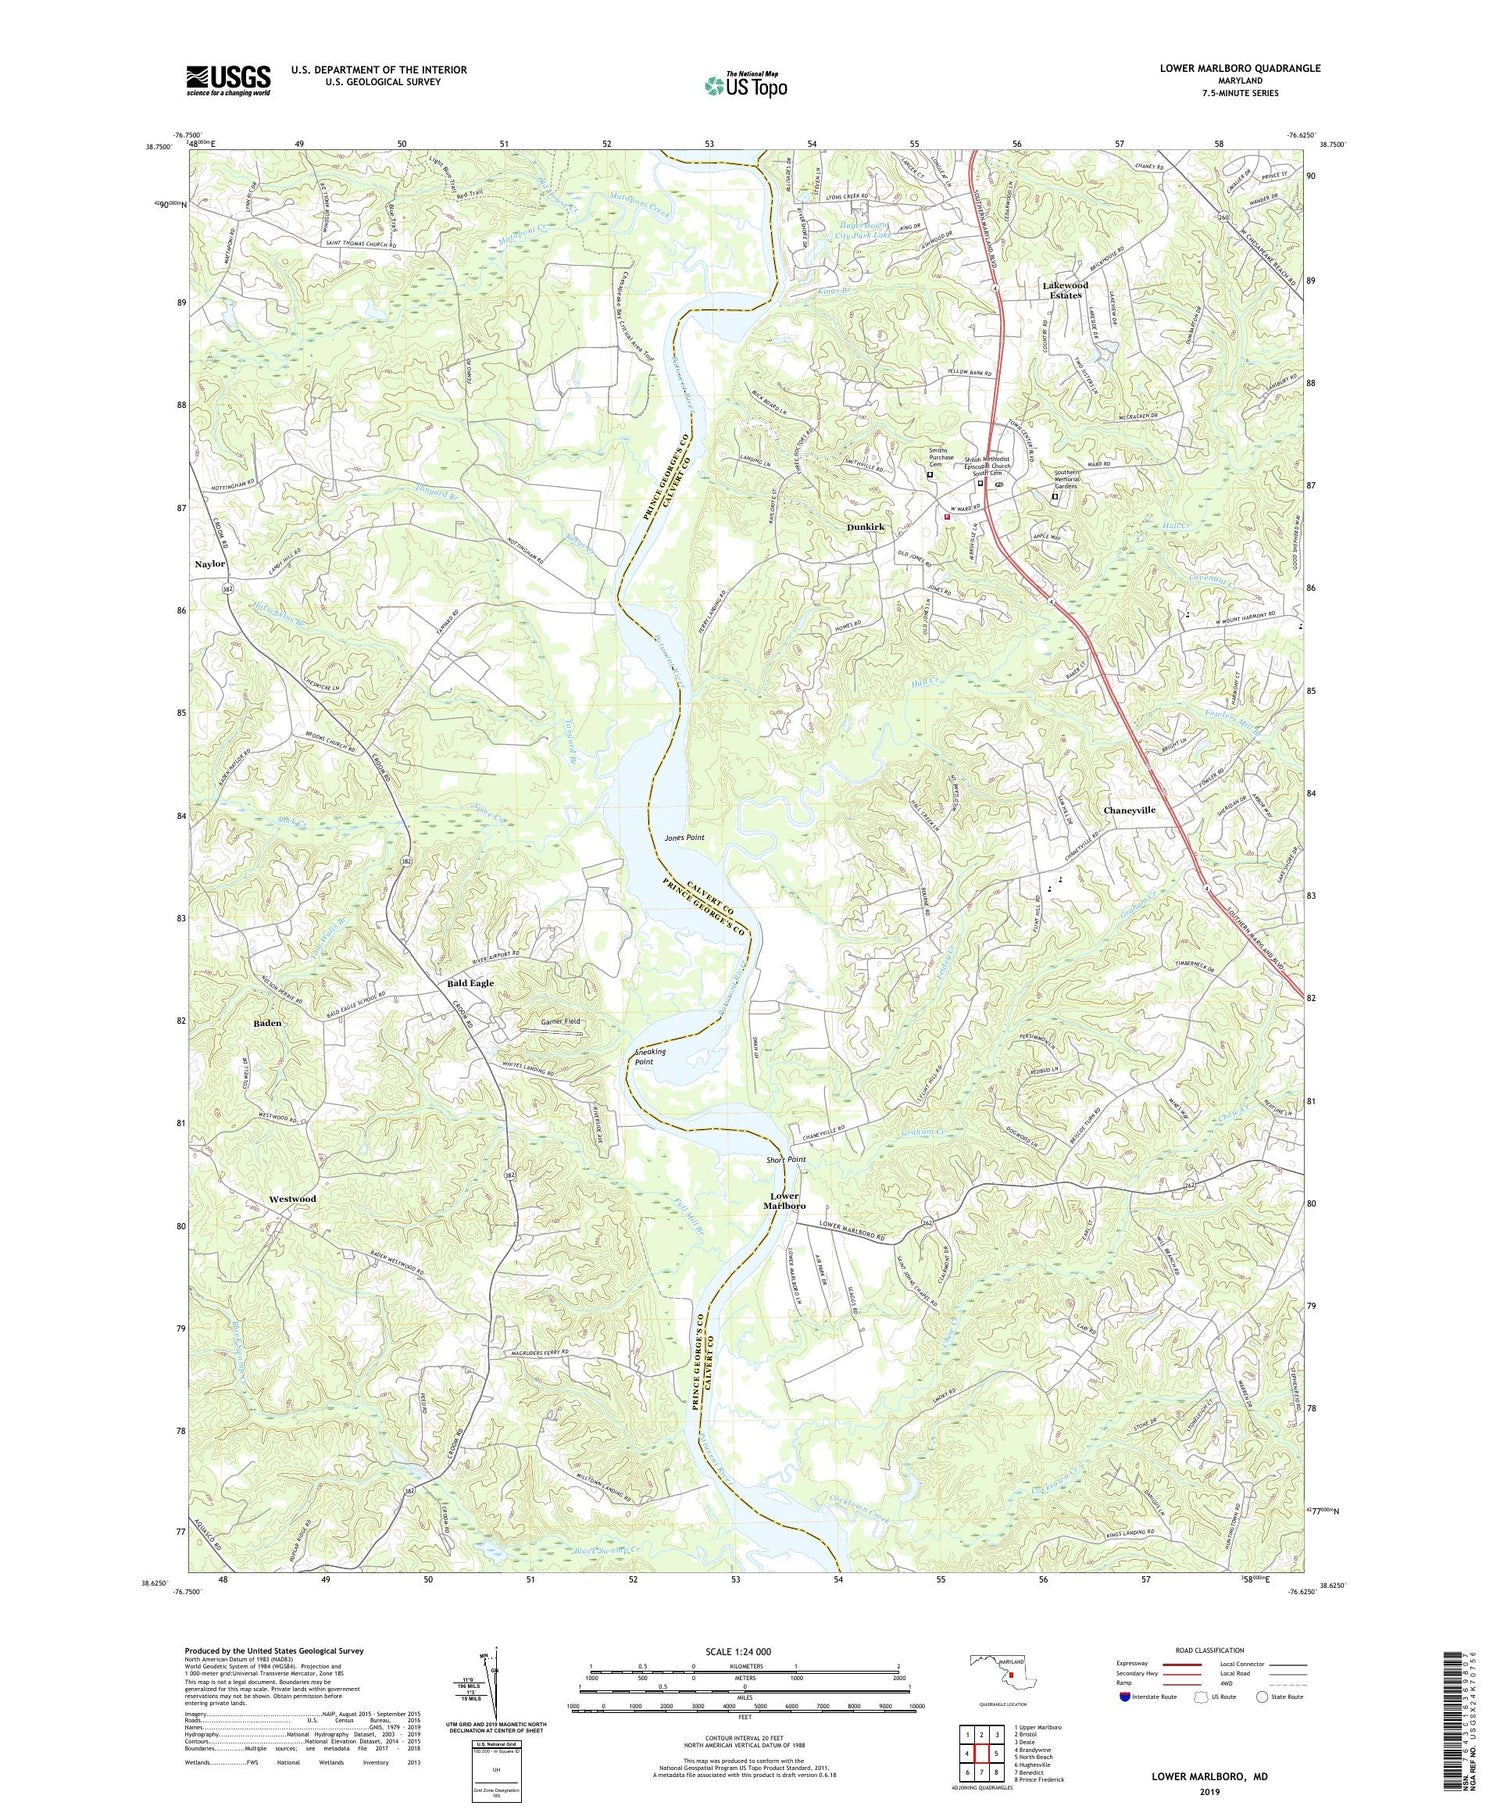 Lower Marlboro Maryland US Topo Map Image